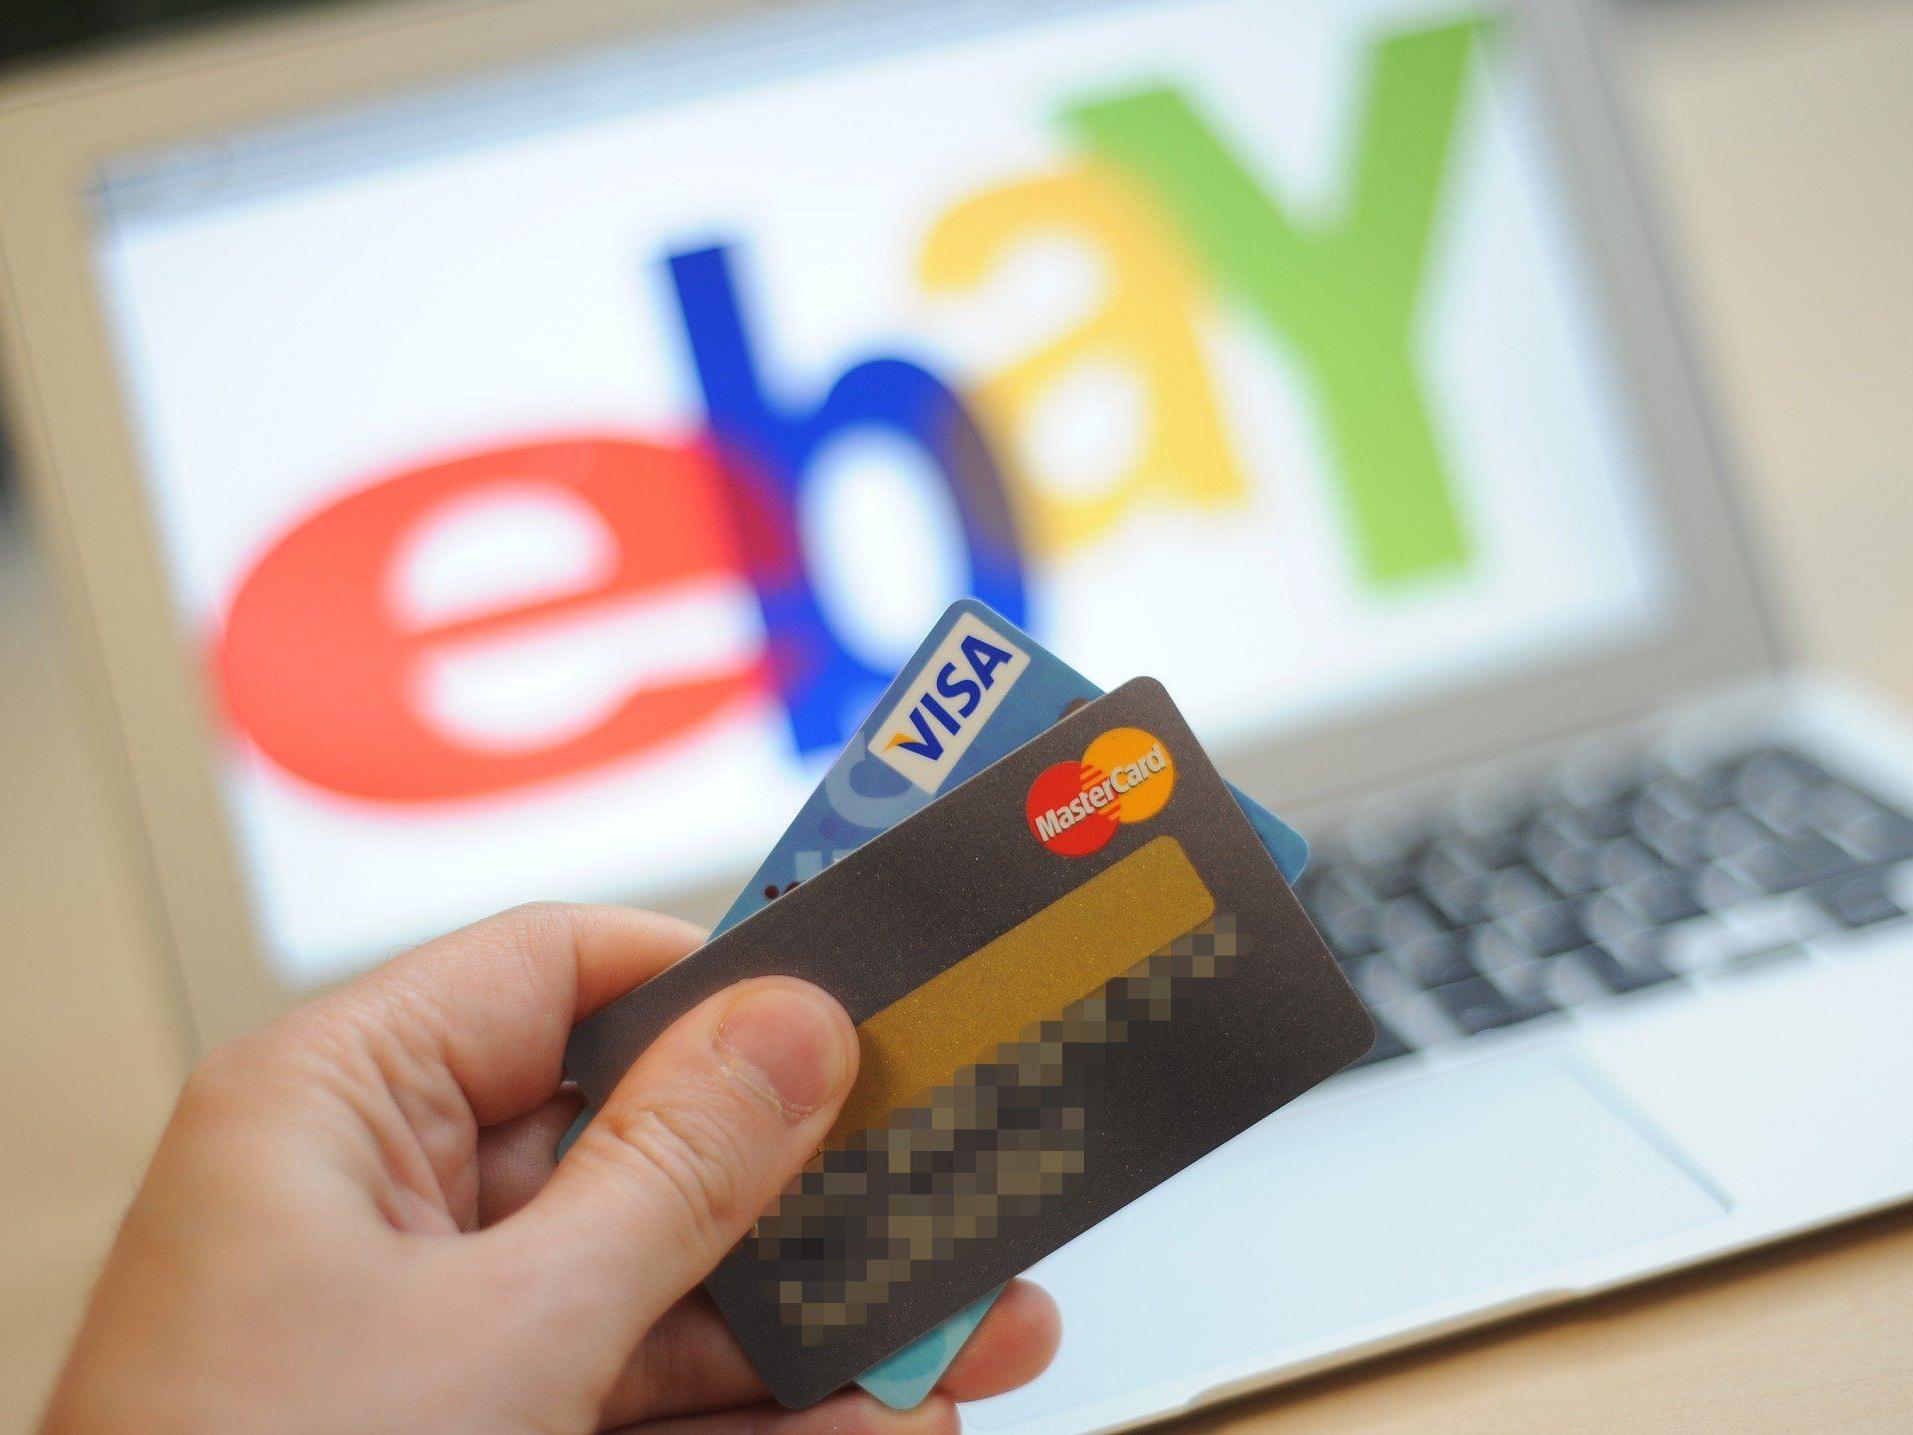 Zum Start sollen rund 30 Prozent der Waren auf Ebay mit dem neuen Garantie-Logo ausgezeichnet sein